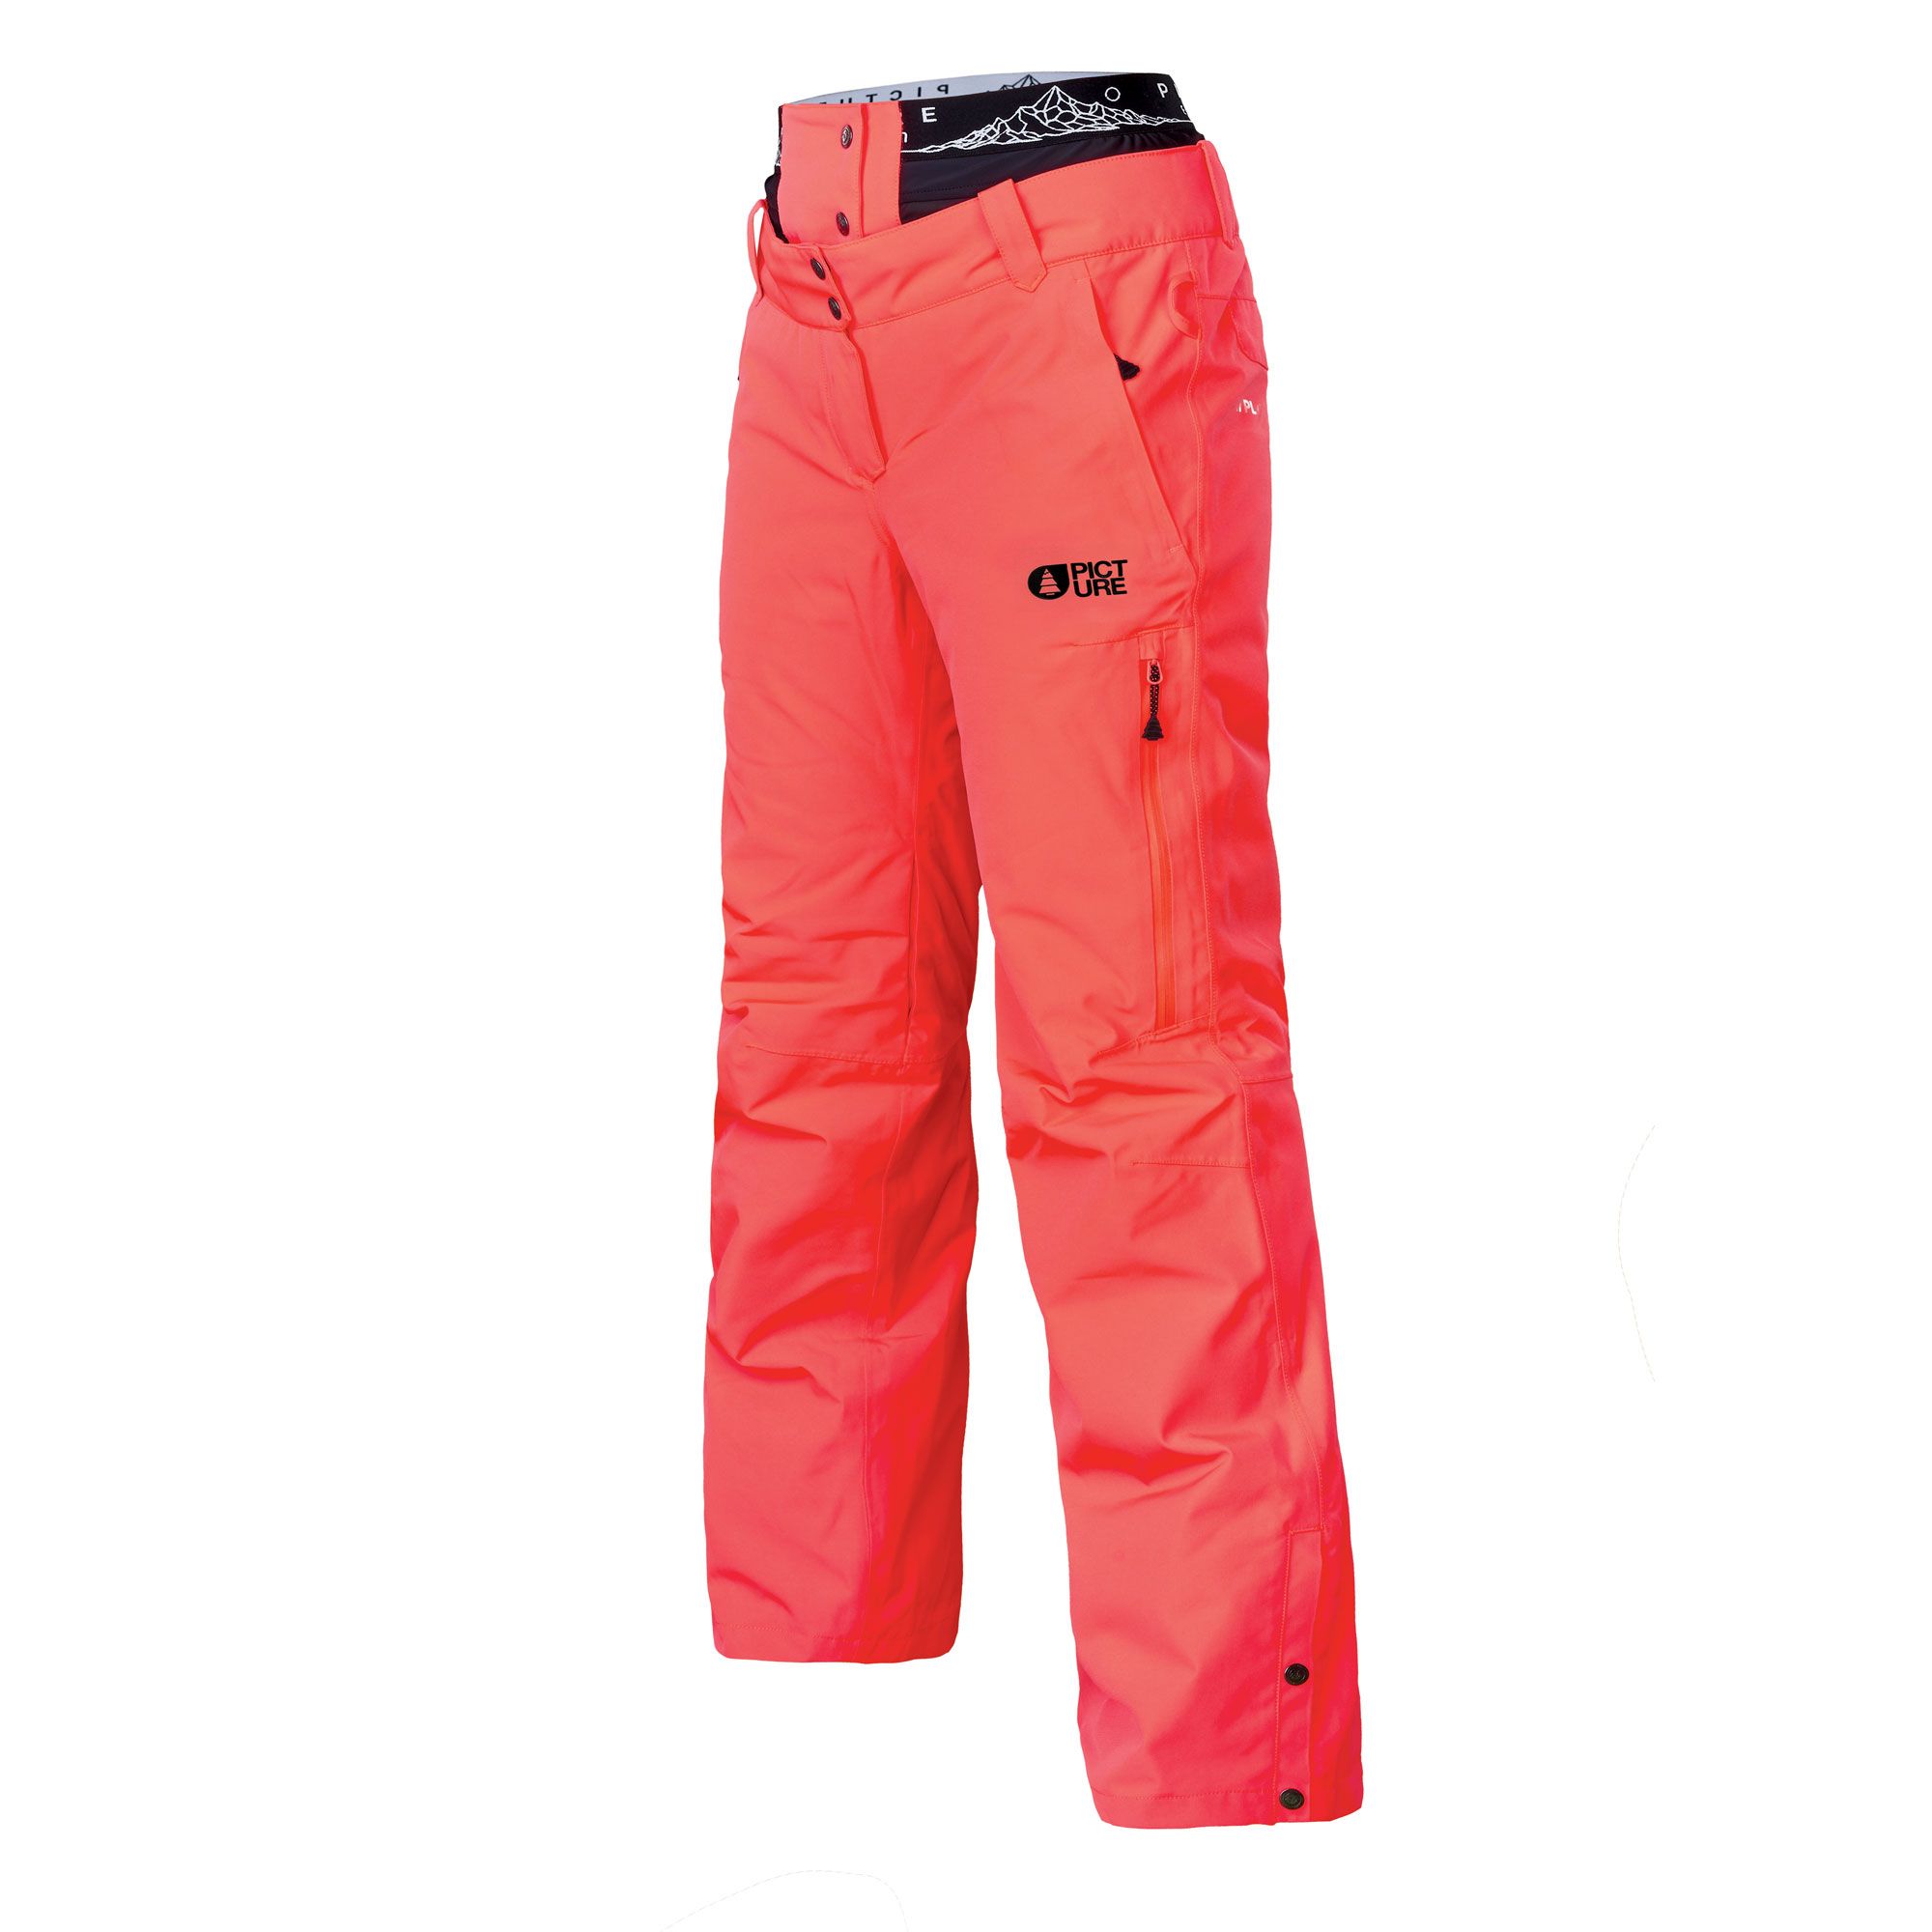 Pantalon de Ski Exa Pant - Corail